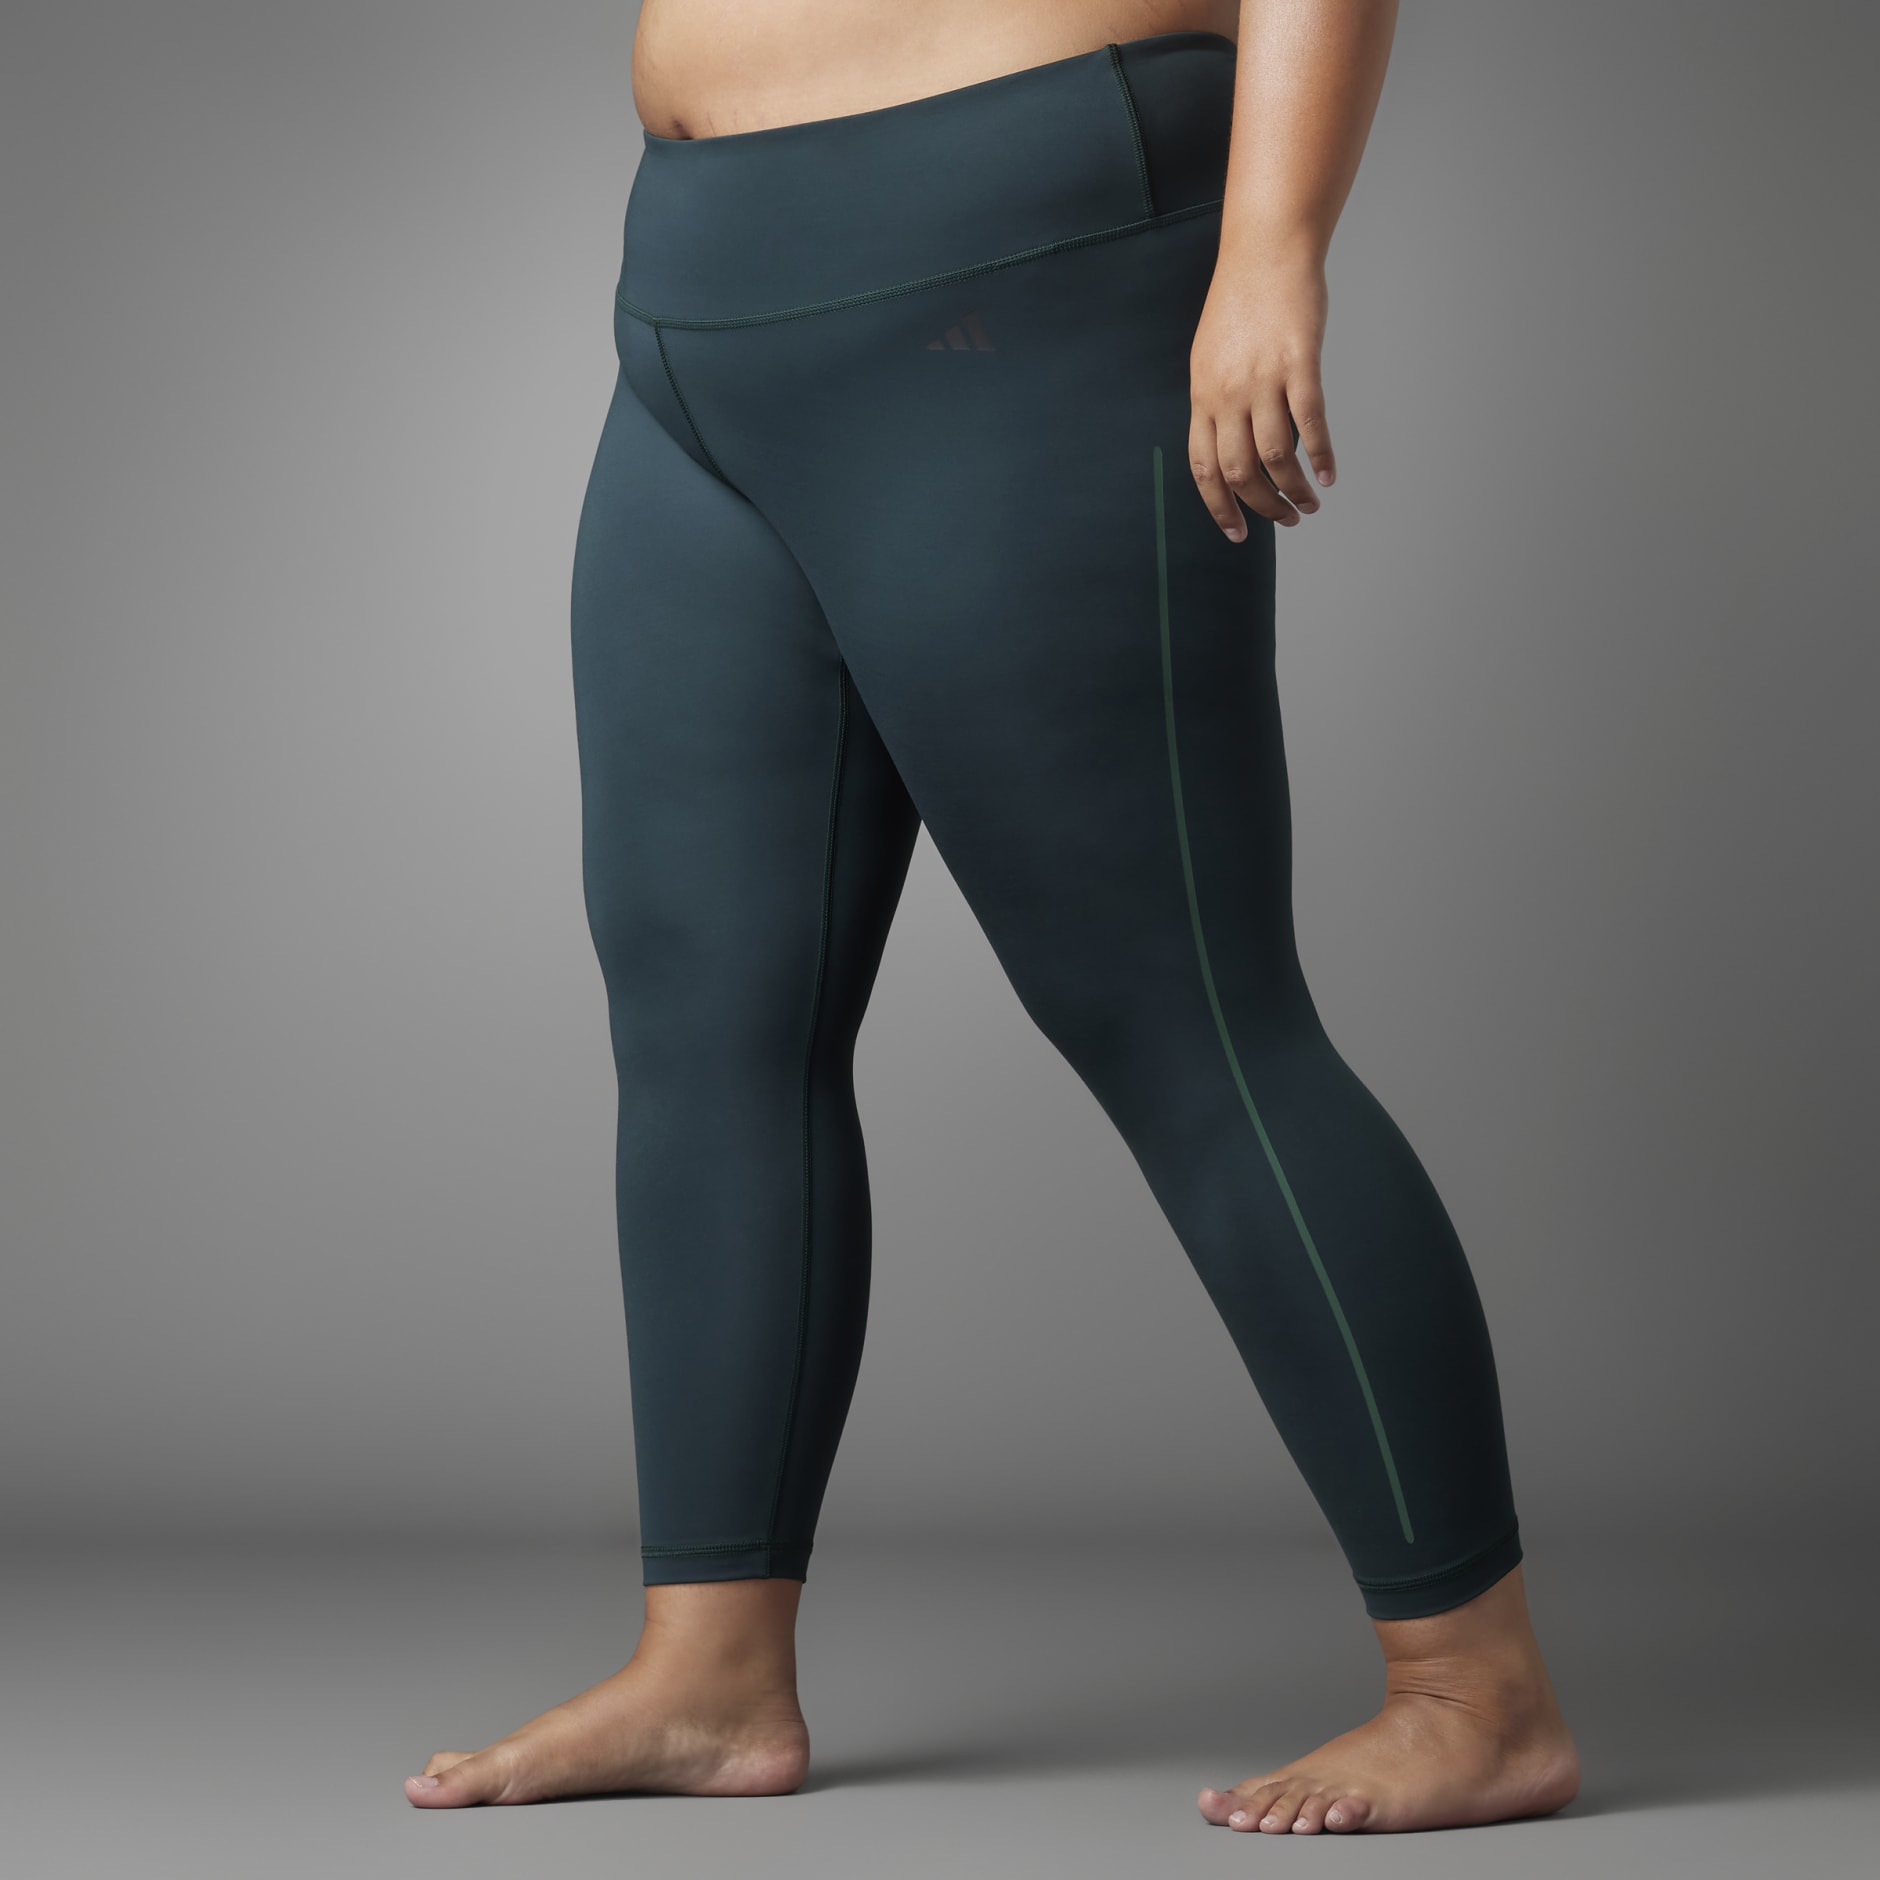 Clothing - Authentic Balance Yoga 7/8 Leggings (Plus Size) - Green